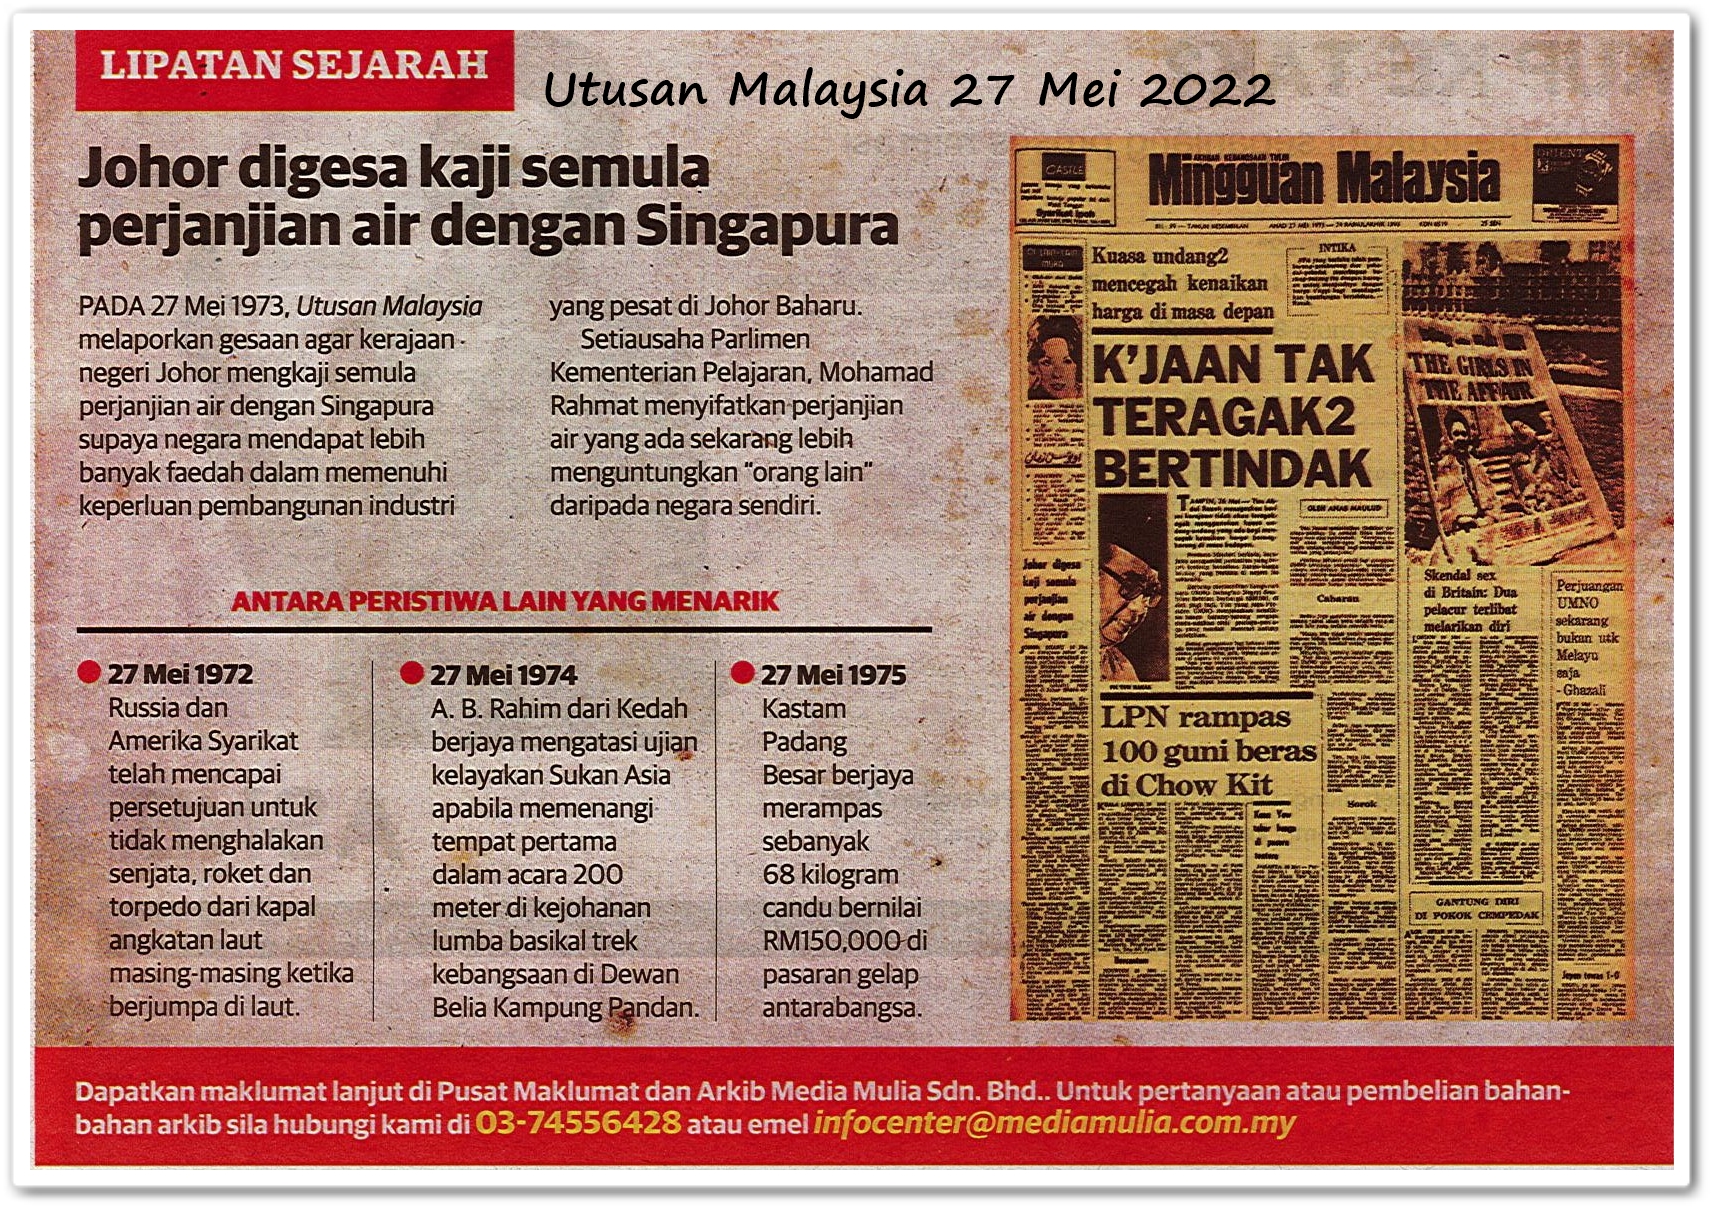 Lipatan sejarah 27 Mei - Keratan akhbar Utusan Malaysia 27 Mei 2022